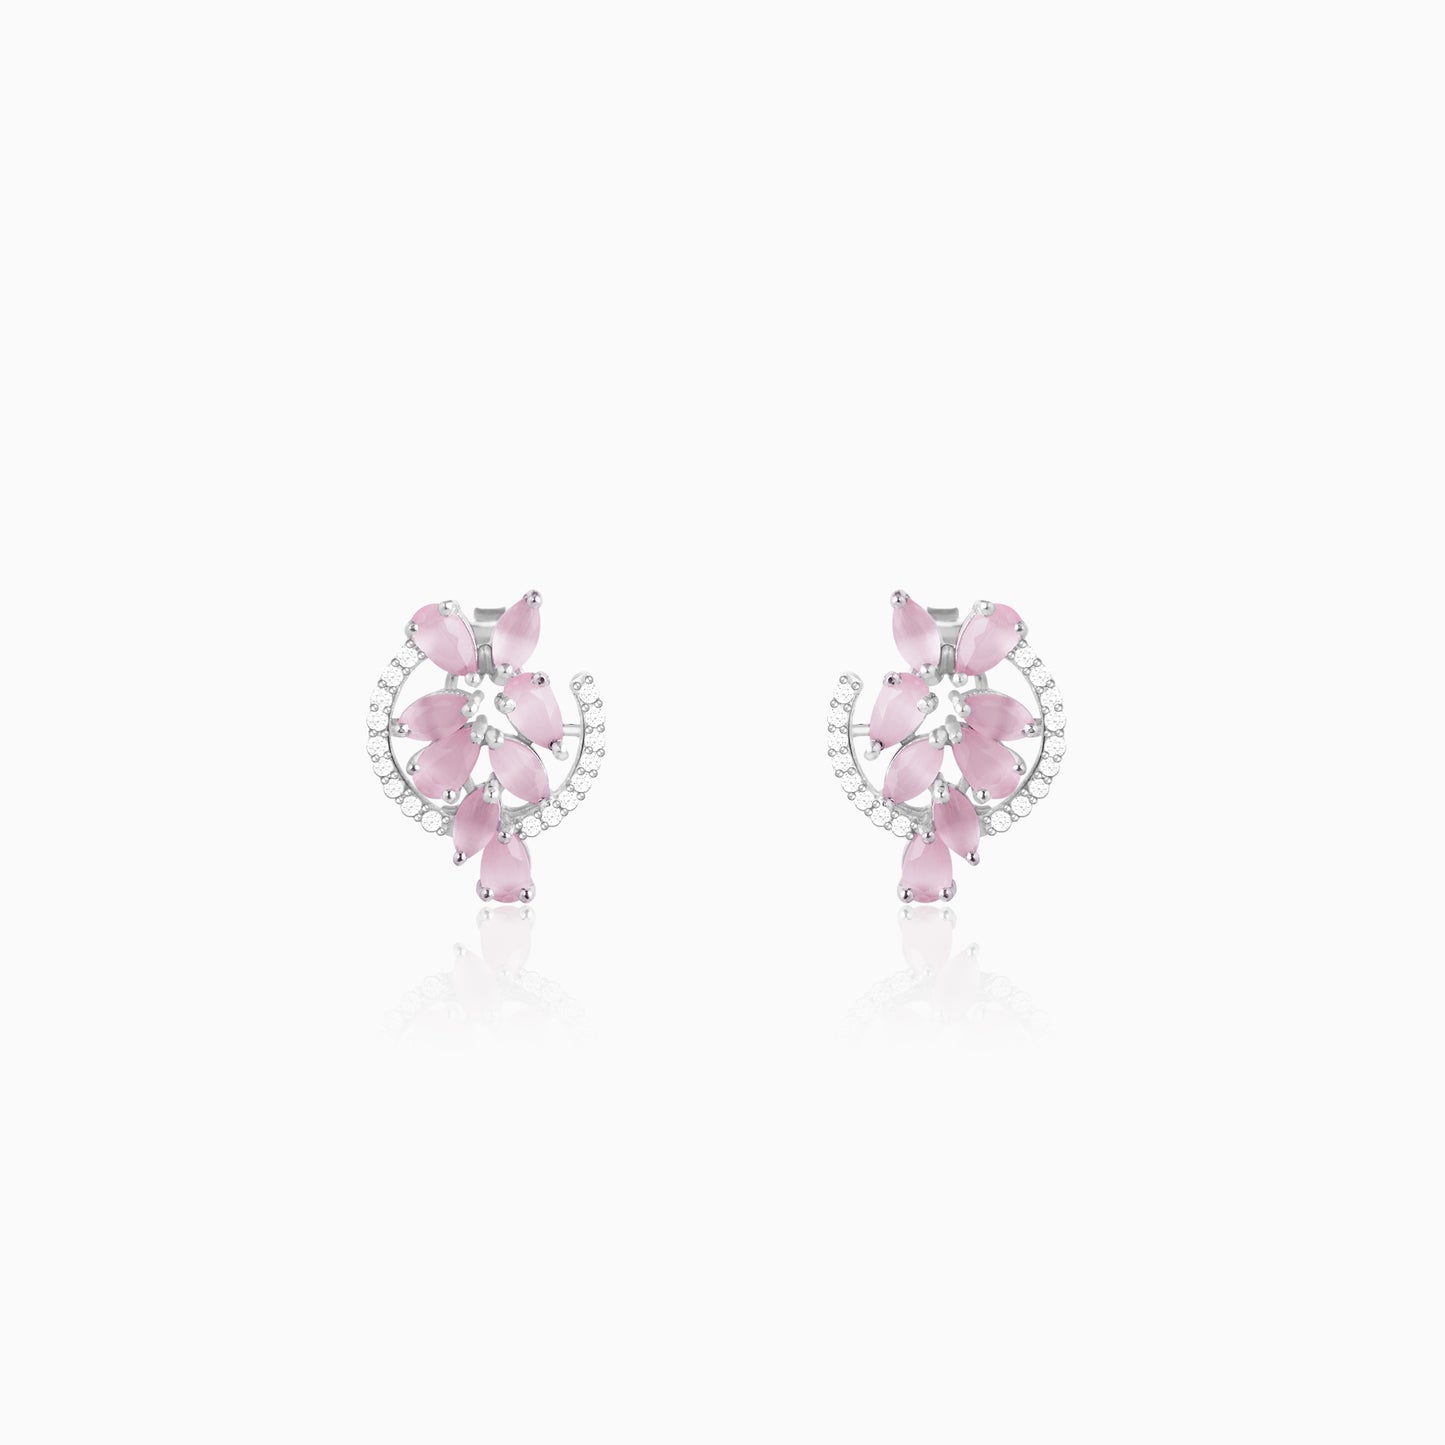 The Pink Periwinkle Earrings